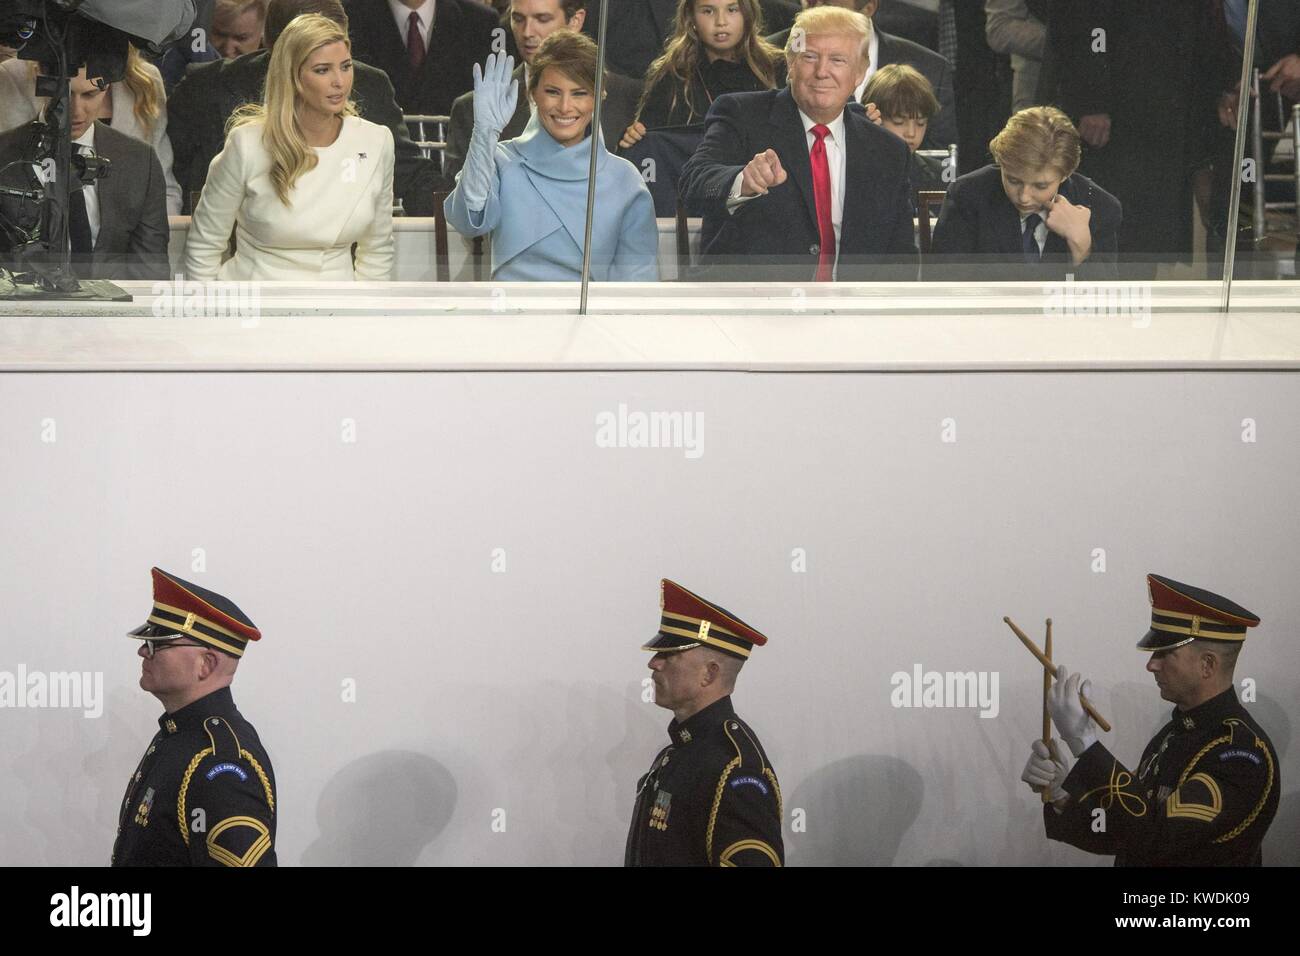 Le président Donald Trump et membres de sa famille voir la parade inaugurale, le 20 janvier 2017. Dans la première rangée, maison blanche, l'examen de L-R : Ivanka Trump, le Président, la Première Dame Melania Trump, et Barron (BSLOC 2017 Trump 18  125) Banque D'Images